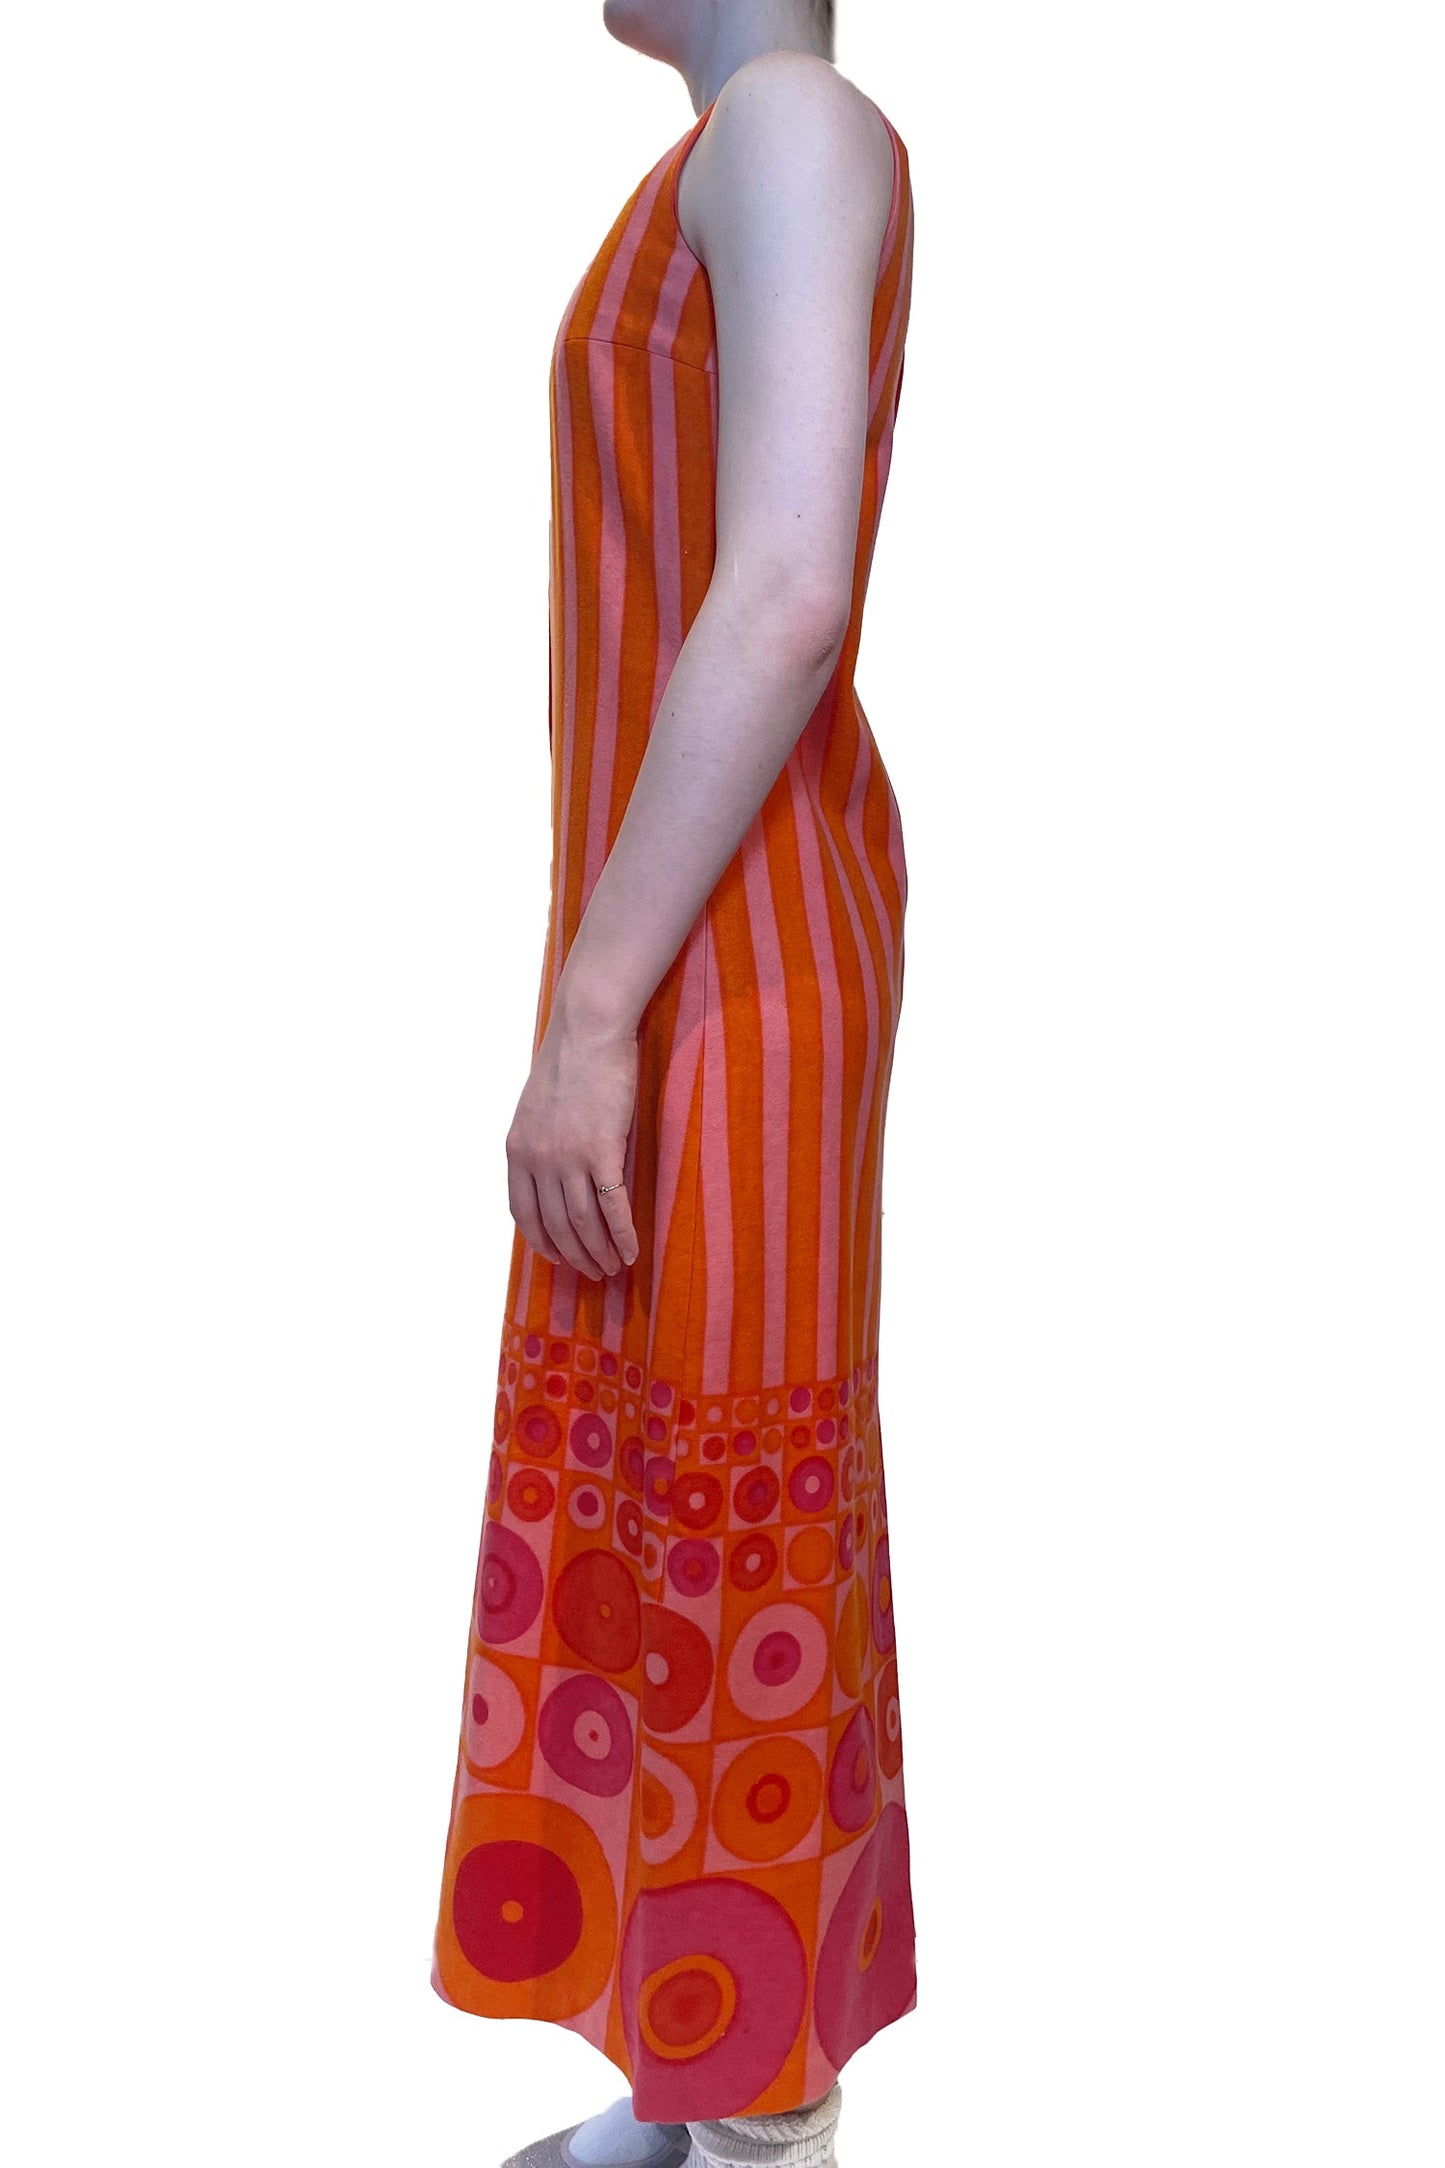 Vintage Carola Pink Orange Stripe Sleeveless Dress